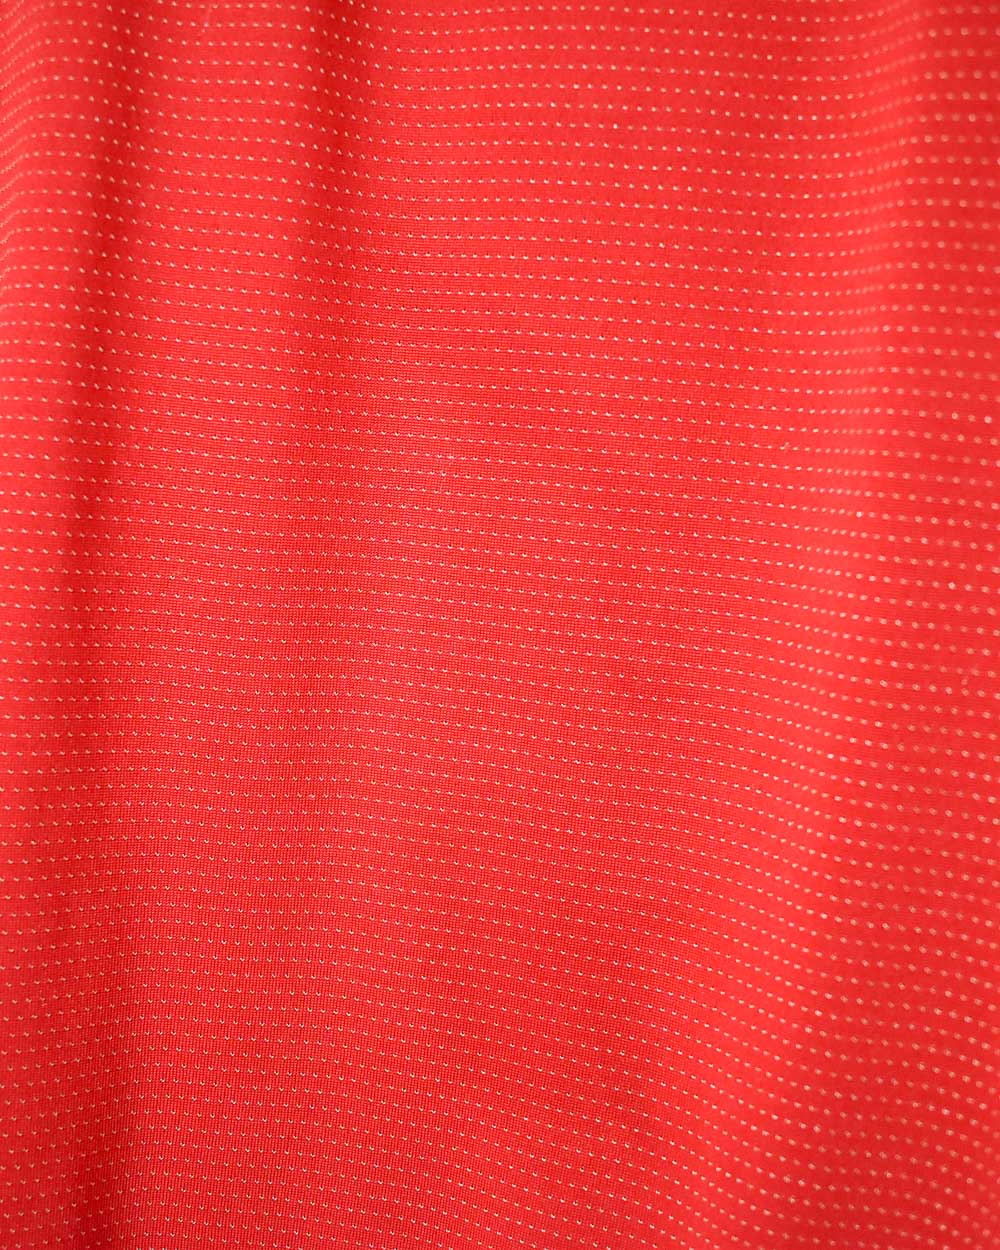 Red Umbro 2004/06 England Away Shirt - Large